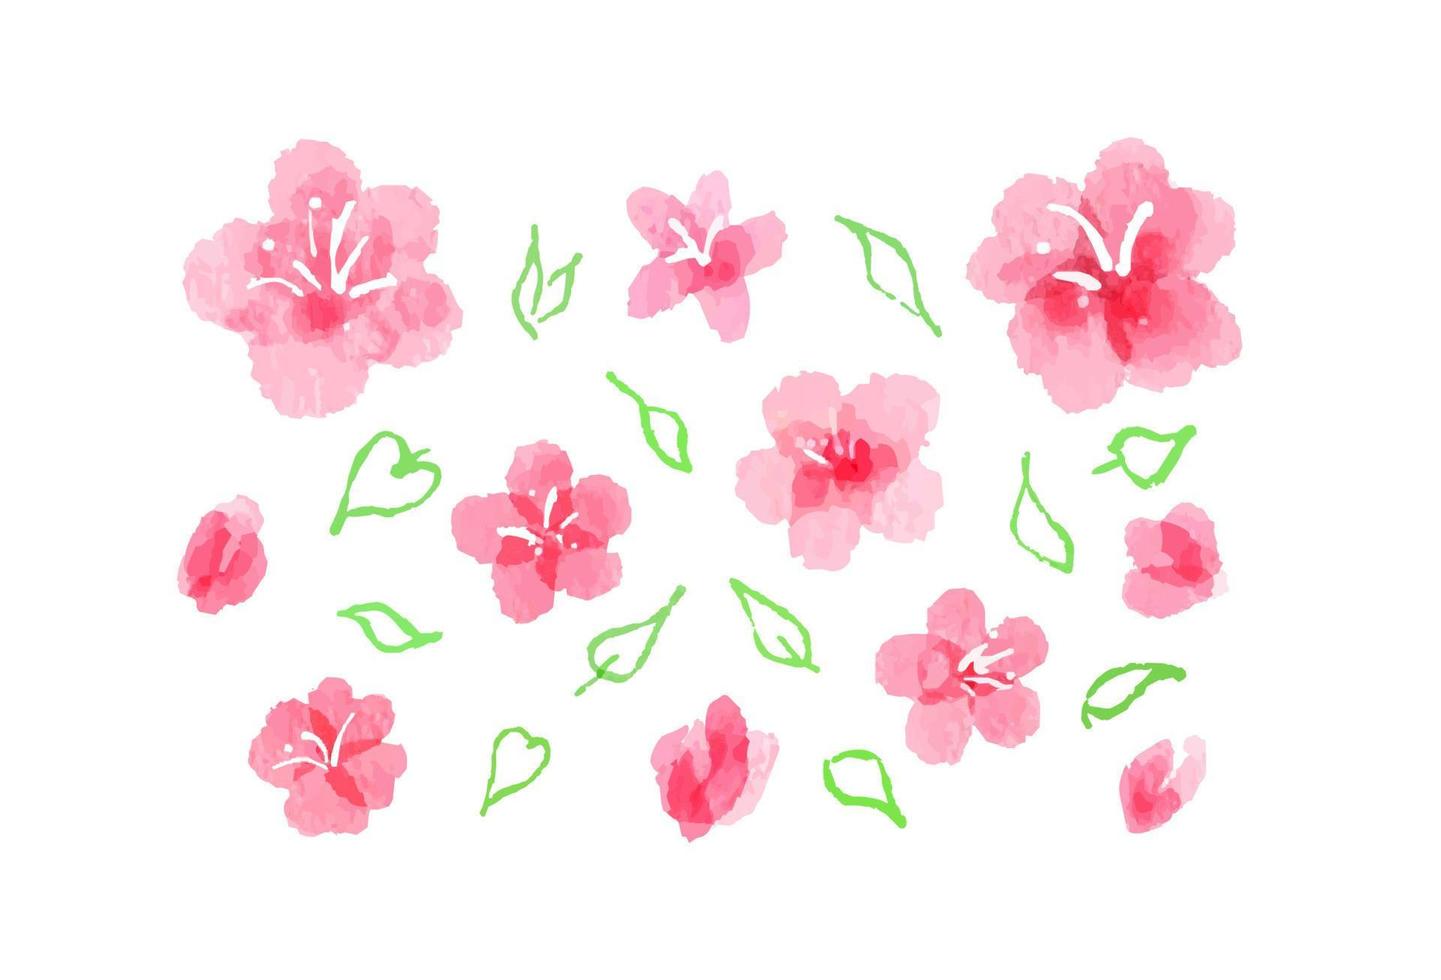 Aquarell Bilder von Sakura Blüte. abstrakt Hand gemalt Rosa Blumen, völlig geöffnet und Knospen, mit Blätter Silhouetten. Sammlung von aquarelle feminin Frühling Design Elemente, isoliert auf Weiß vektor